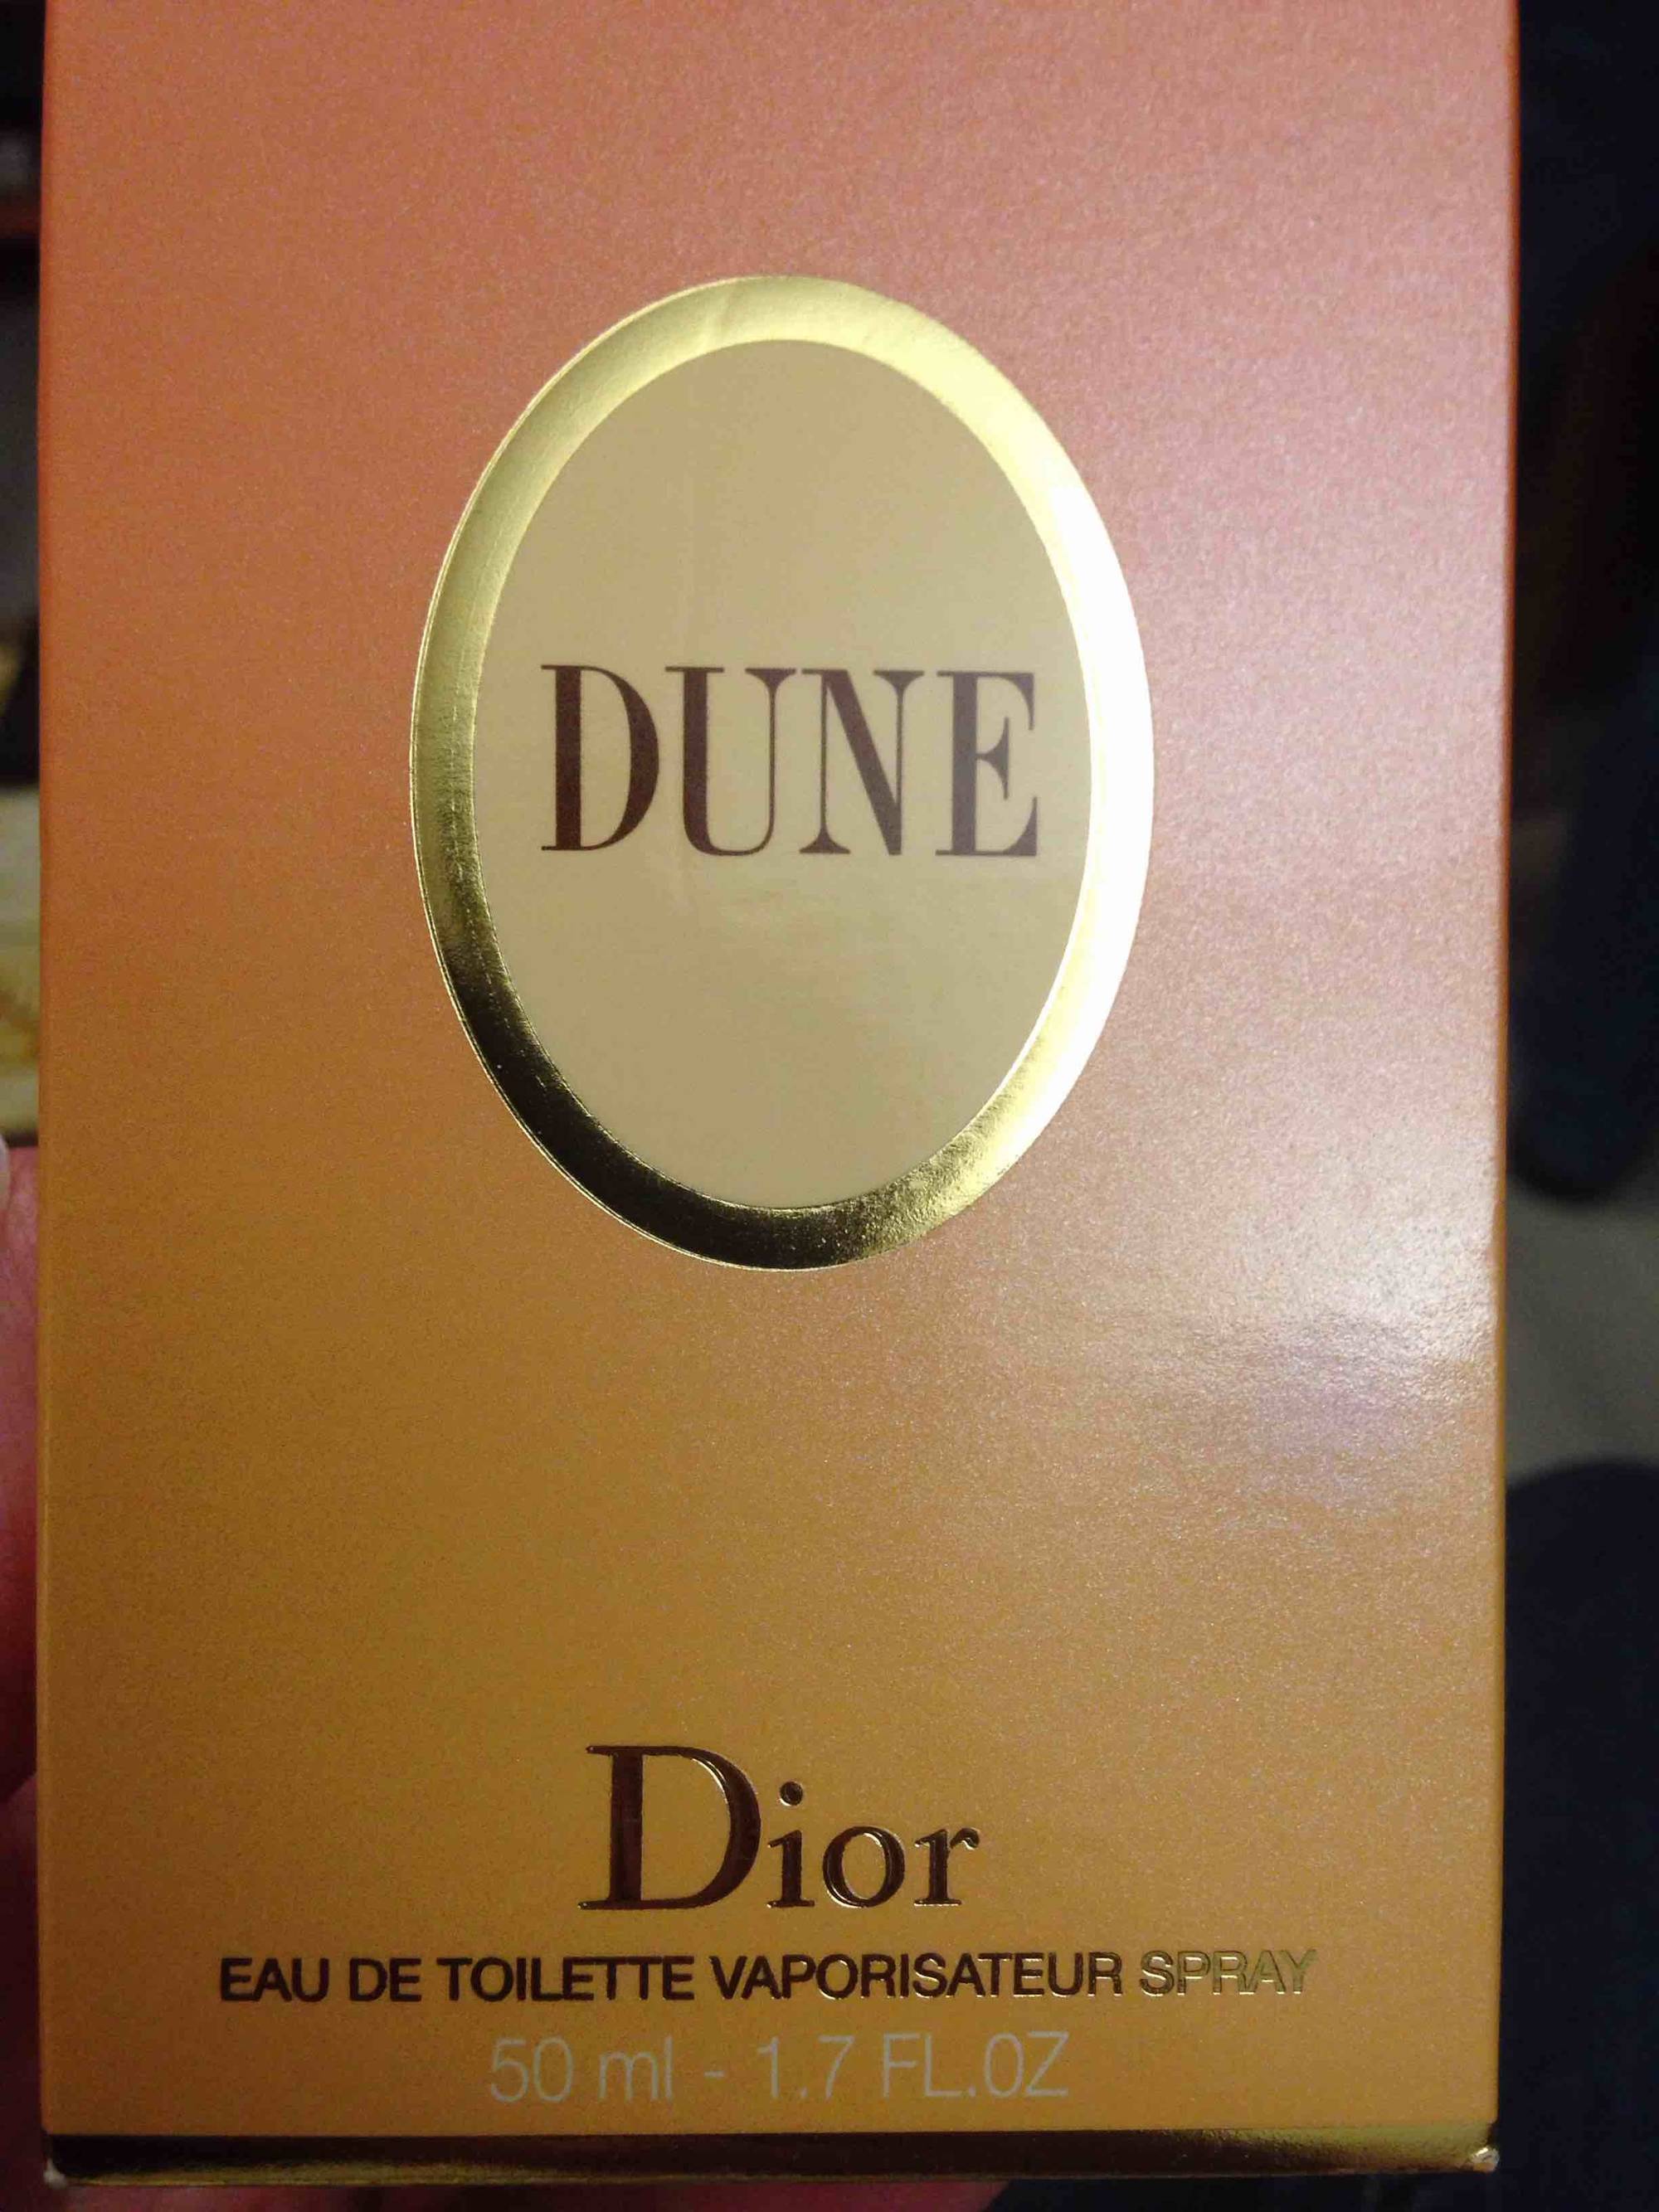 DIOR - Dune - Eau de toilette